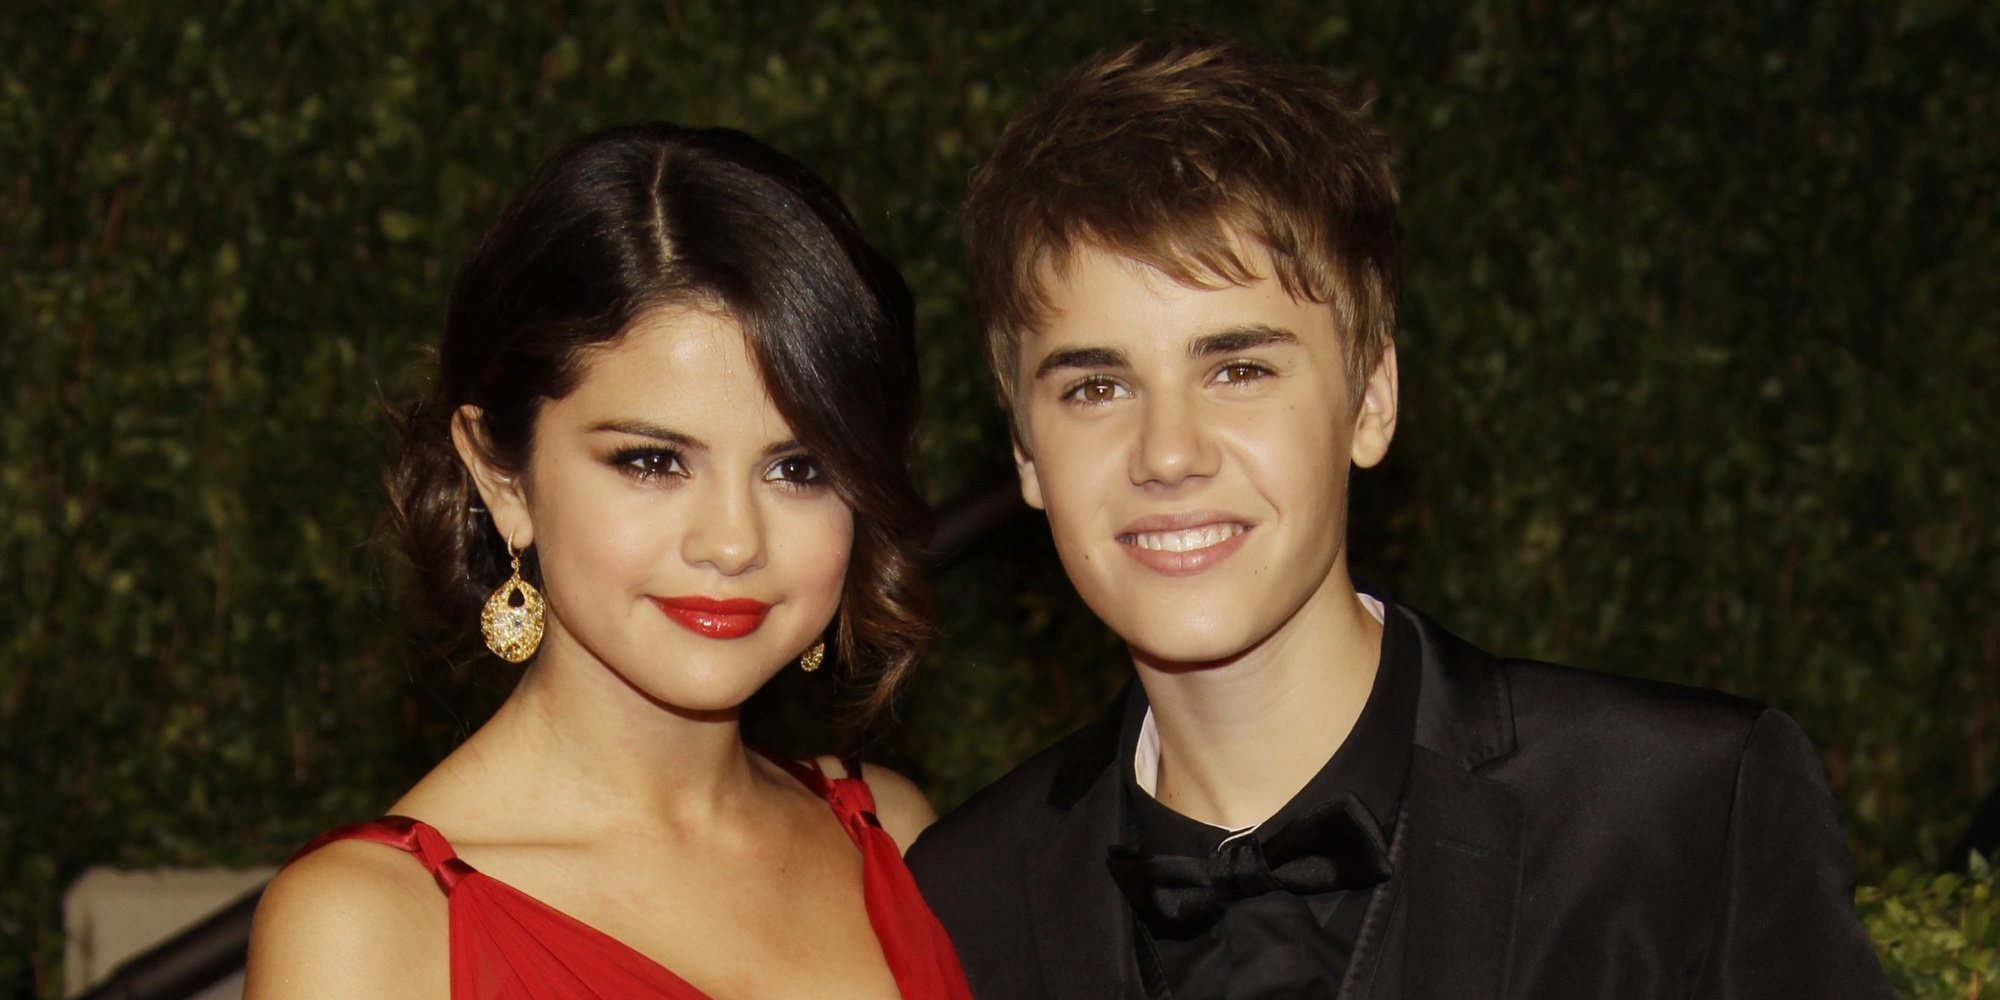 Justin Bieber responde a los comentarios: "Selena Gomez siempre ocupará un lugar especial en mi corazón"